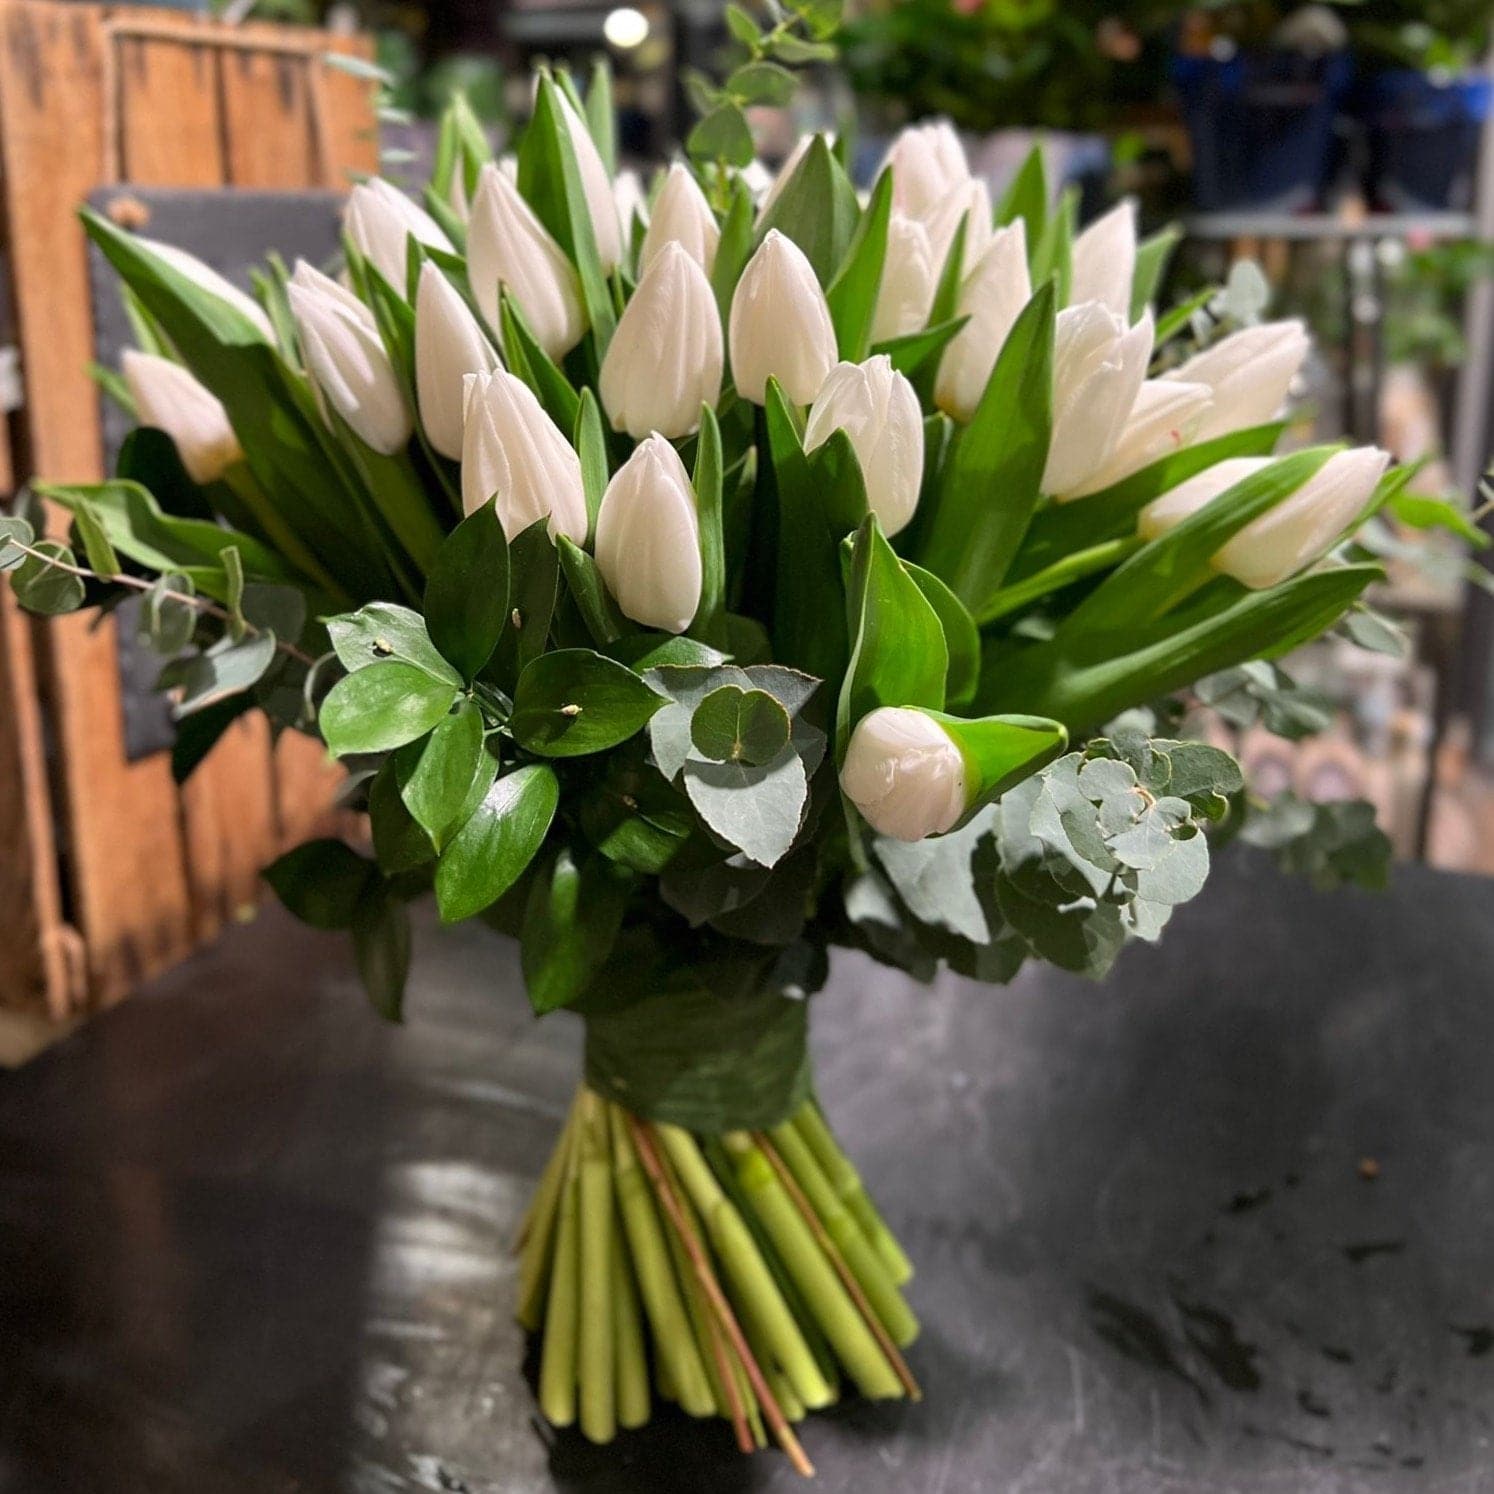 Consegna fiori a domicilio con Deluxy: a Milano e dove tuoi tu – DELUXY